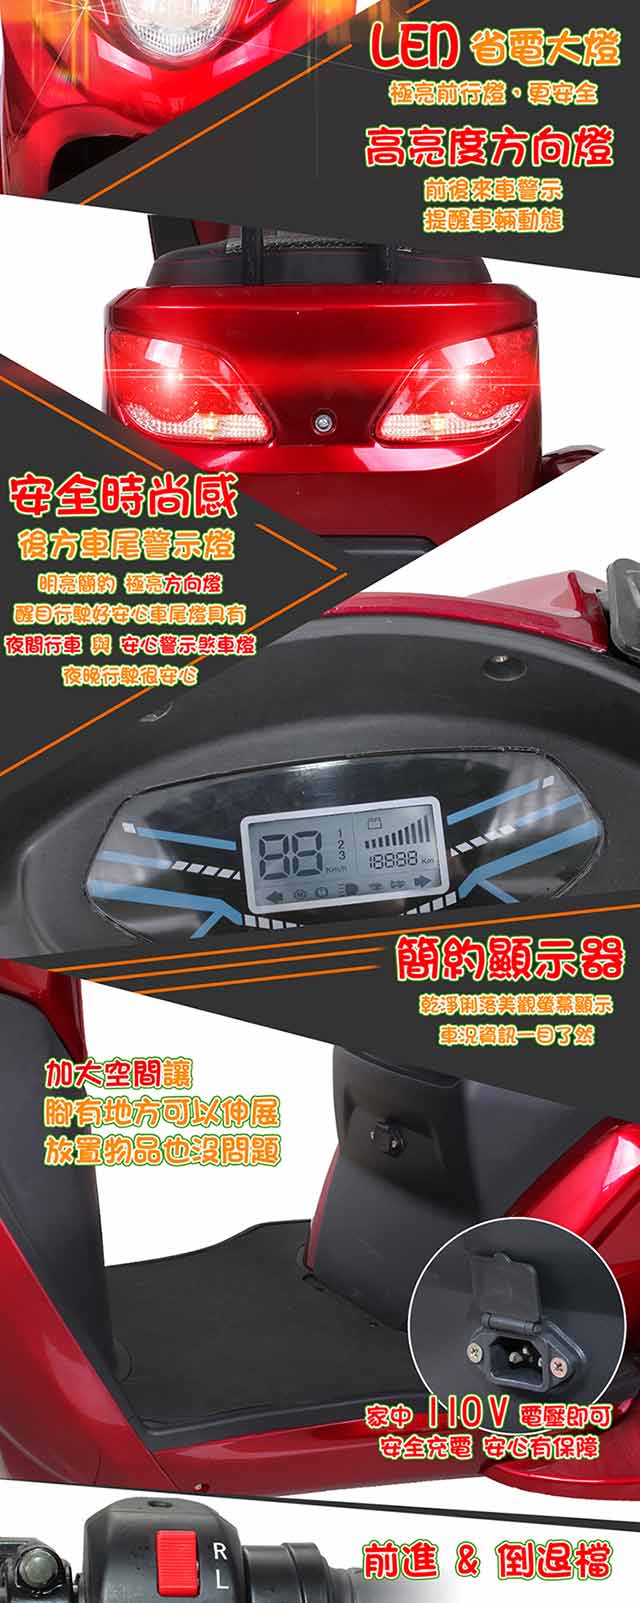 【e路通】EX-S3 酷寶 60V鉛酸電池 500W LED燈 液晶儀表 電動車